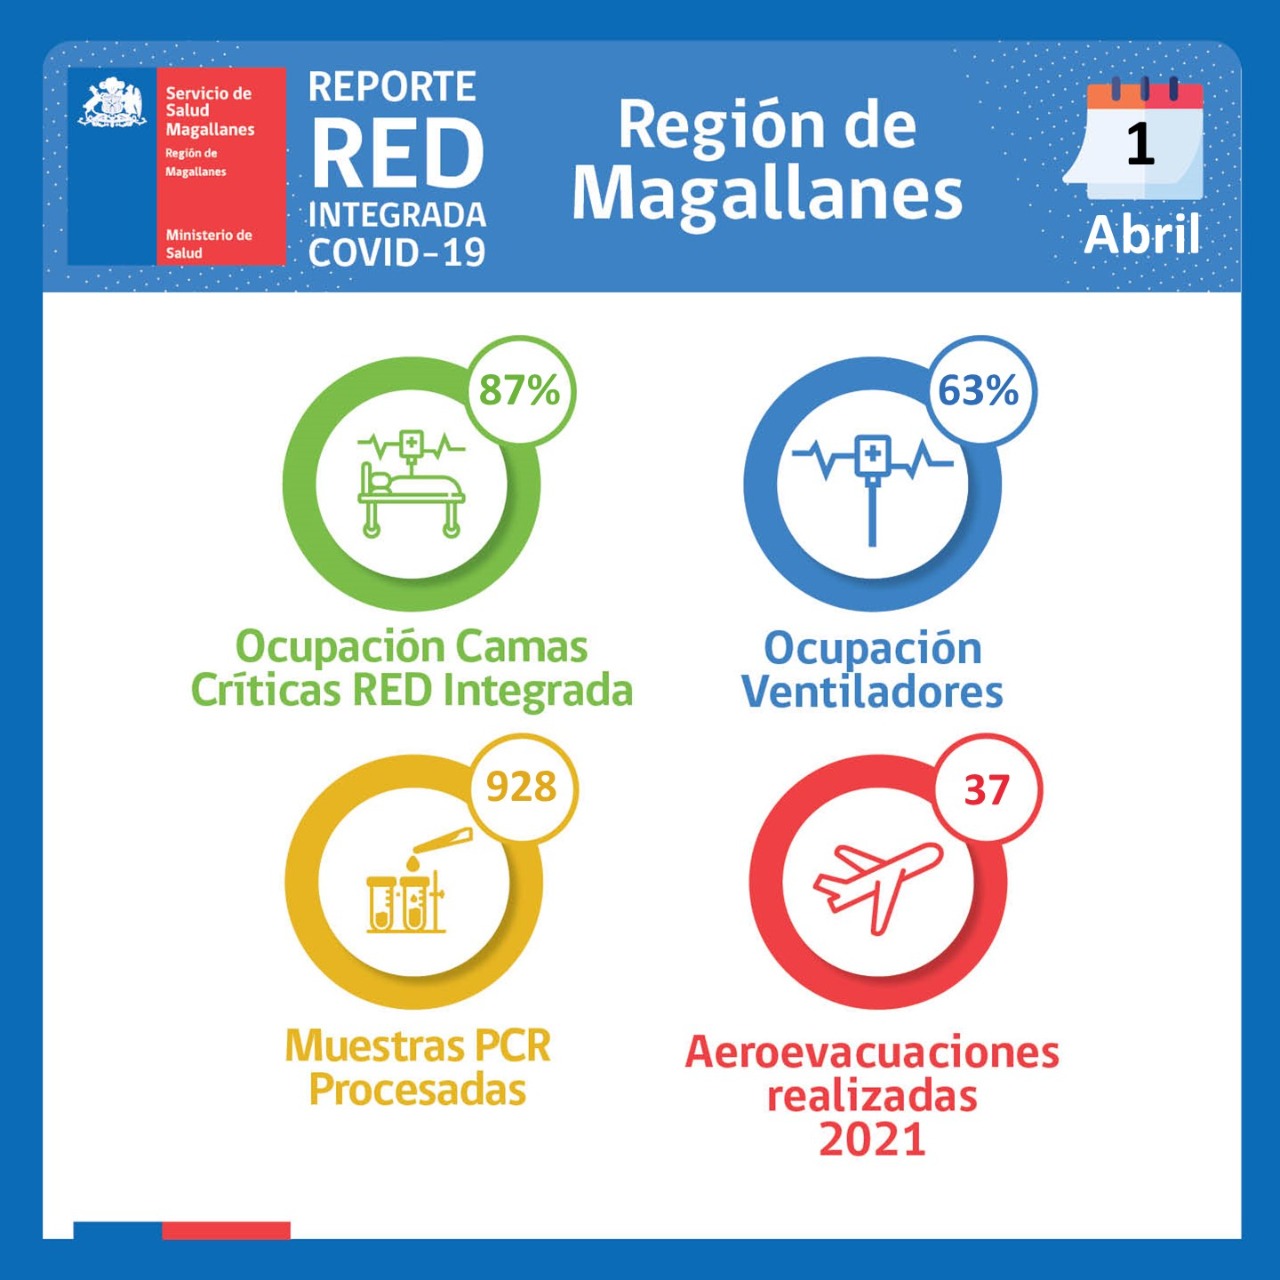 Situación del Hospital Clínico y Red Integrada Covid19 en Magallanes al 1° de abril